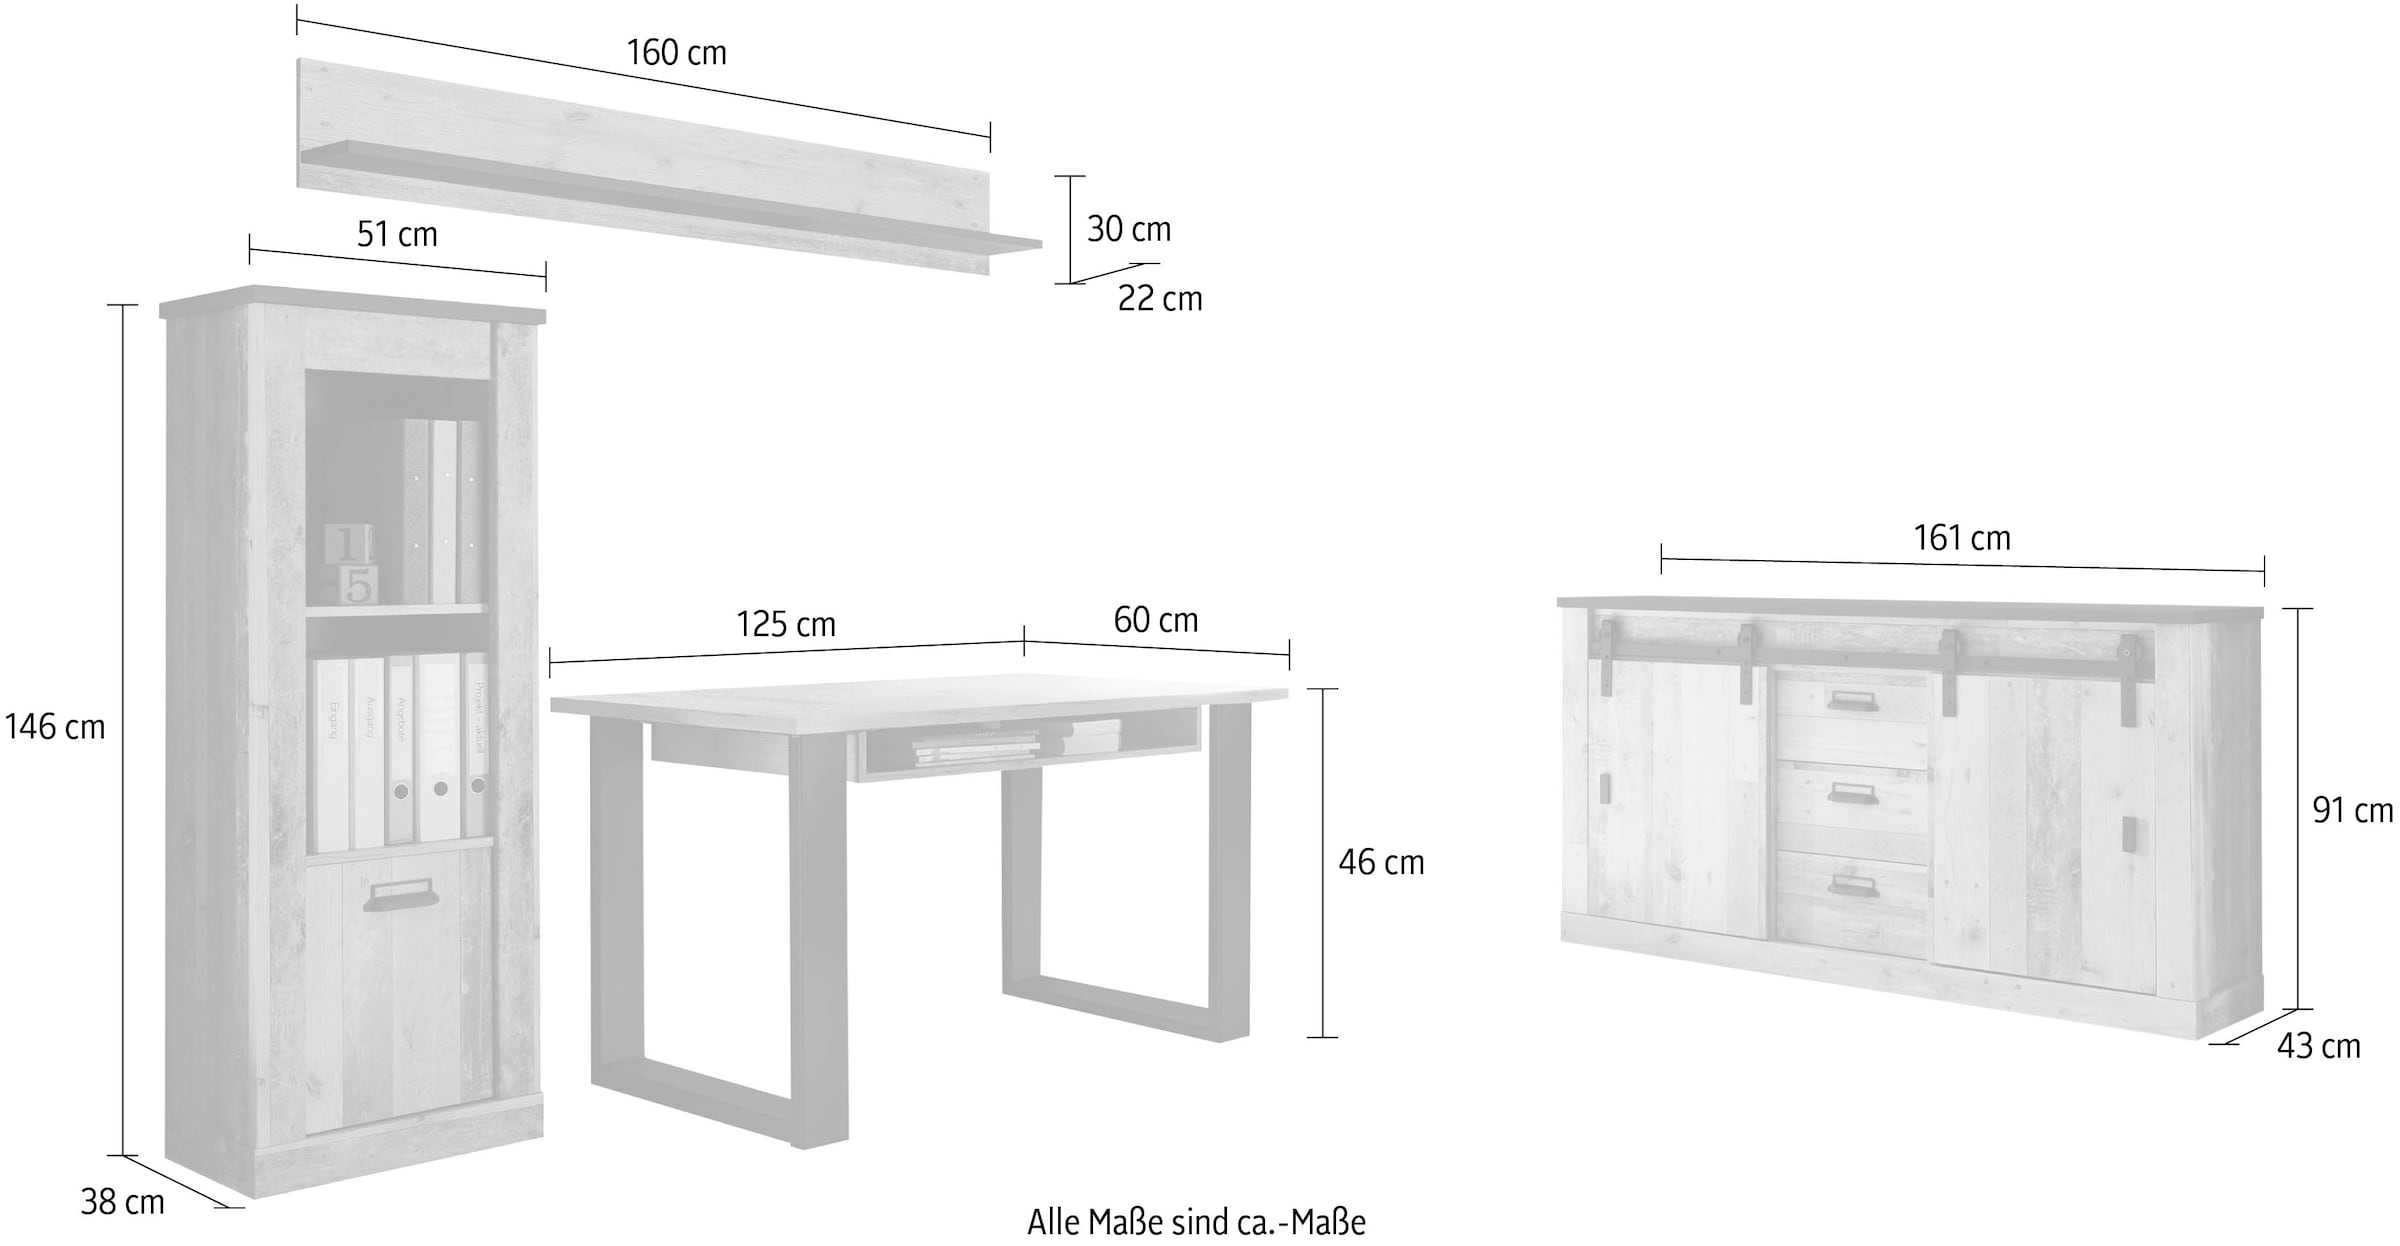 Home affaire Schrank-Set »SHERWOOD«, (4 St.), Büromöbel Set in Holz Dekor, mit Scheunentorbeschlag aus Metall